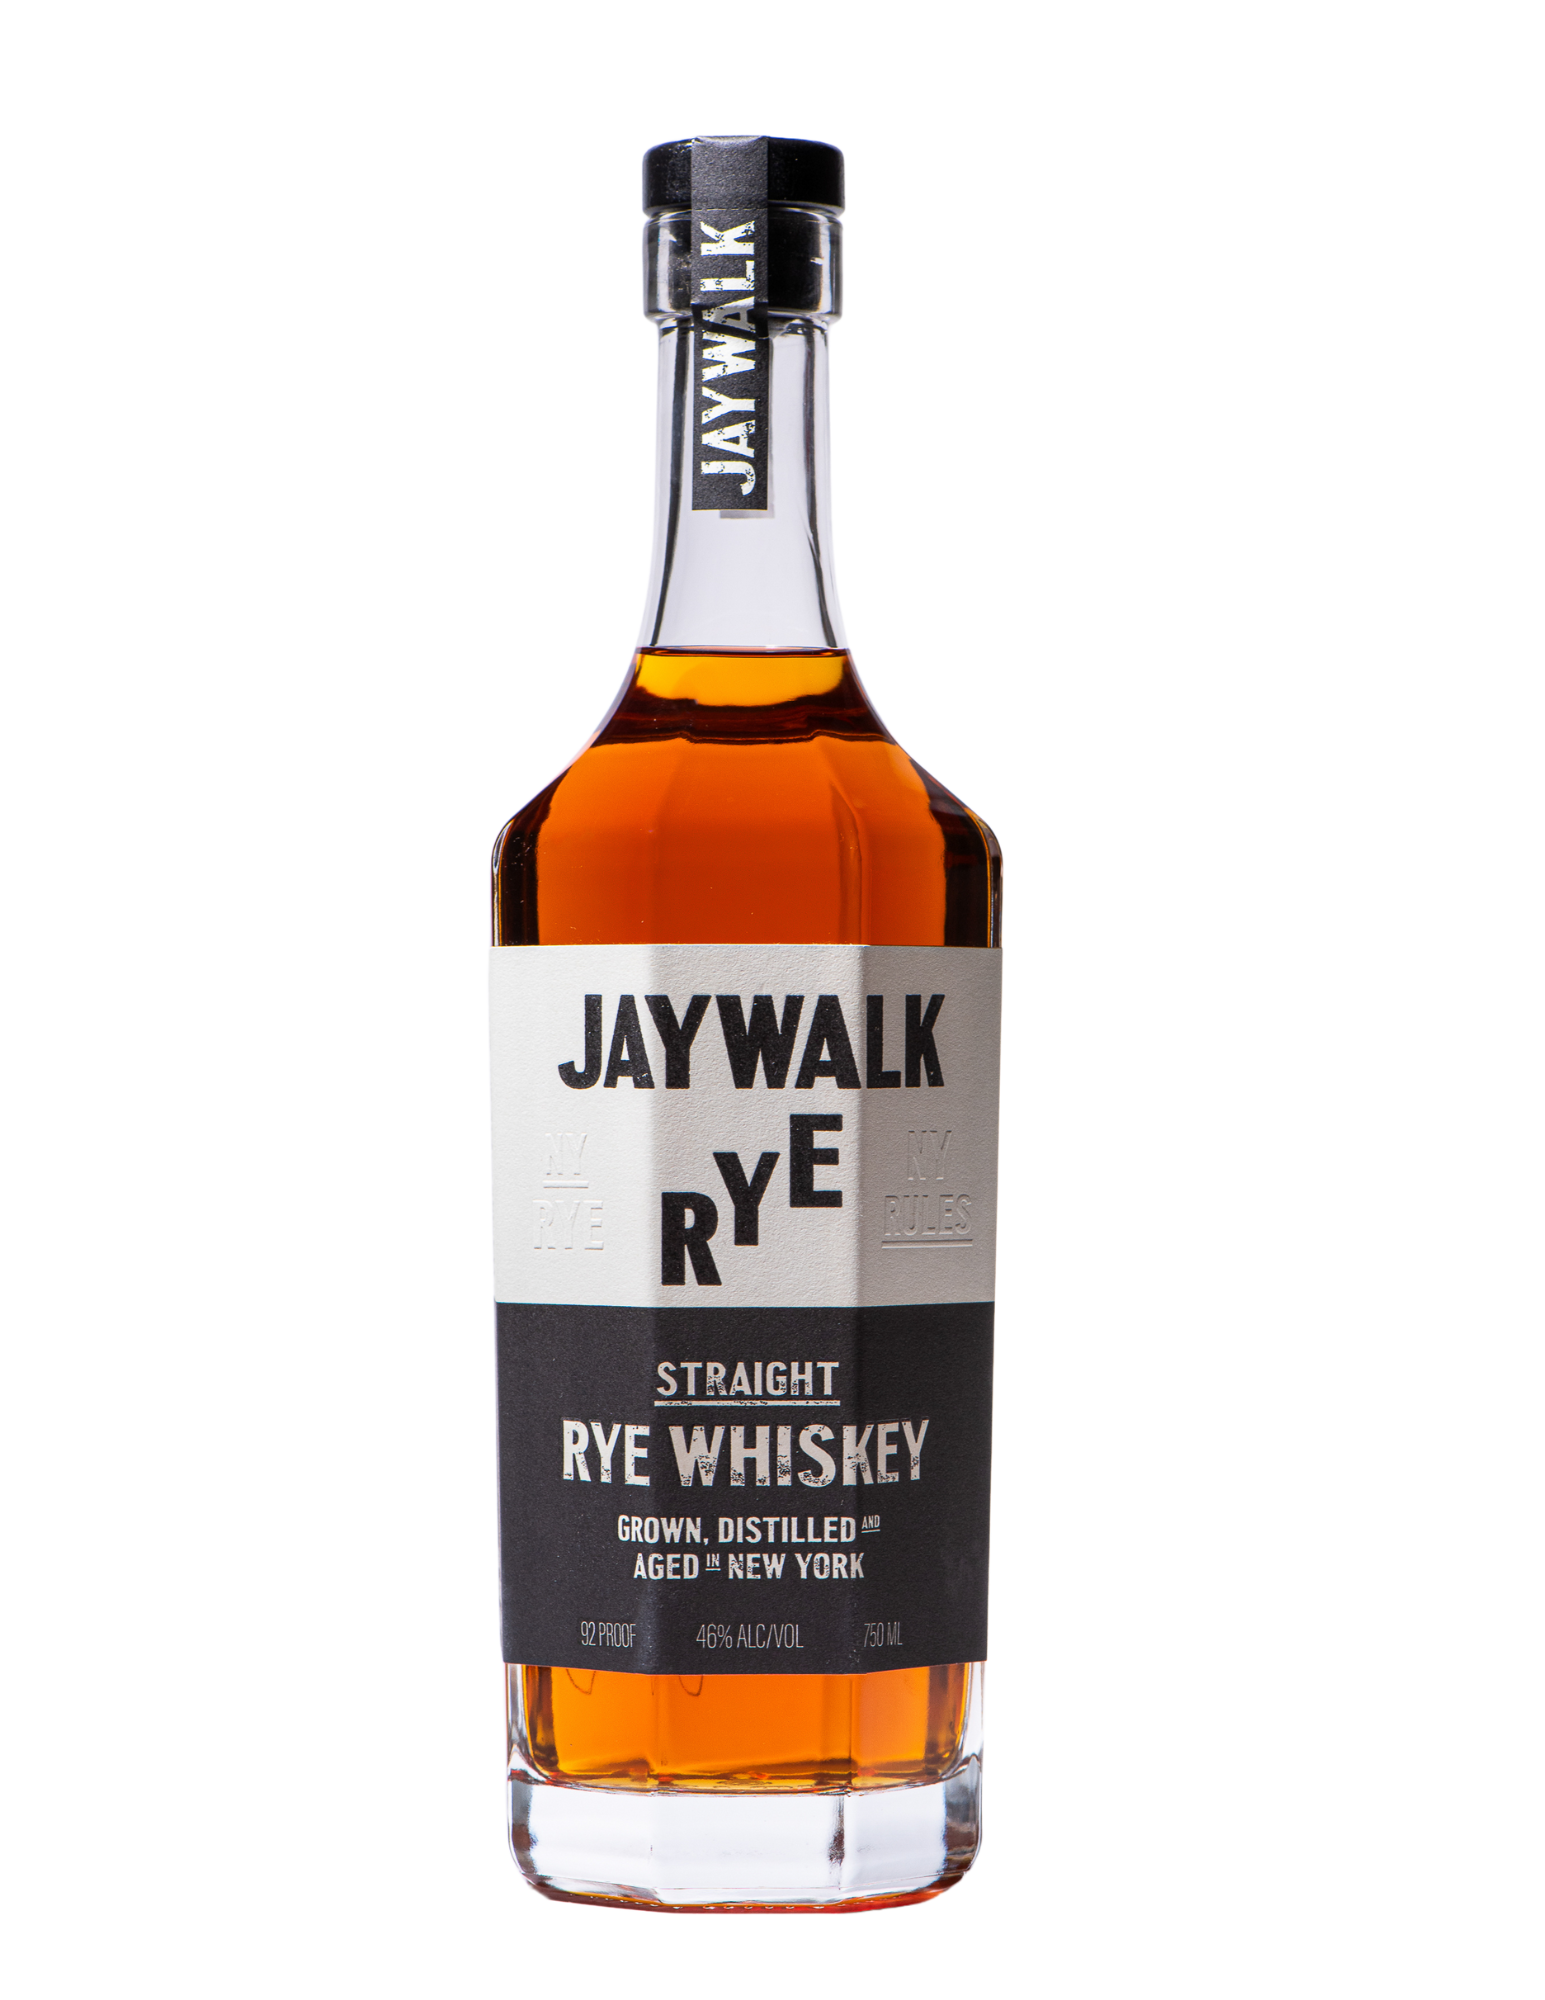 Jaywalk Heirloom Rye Whiskey from New York Distilling Company.